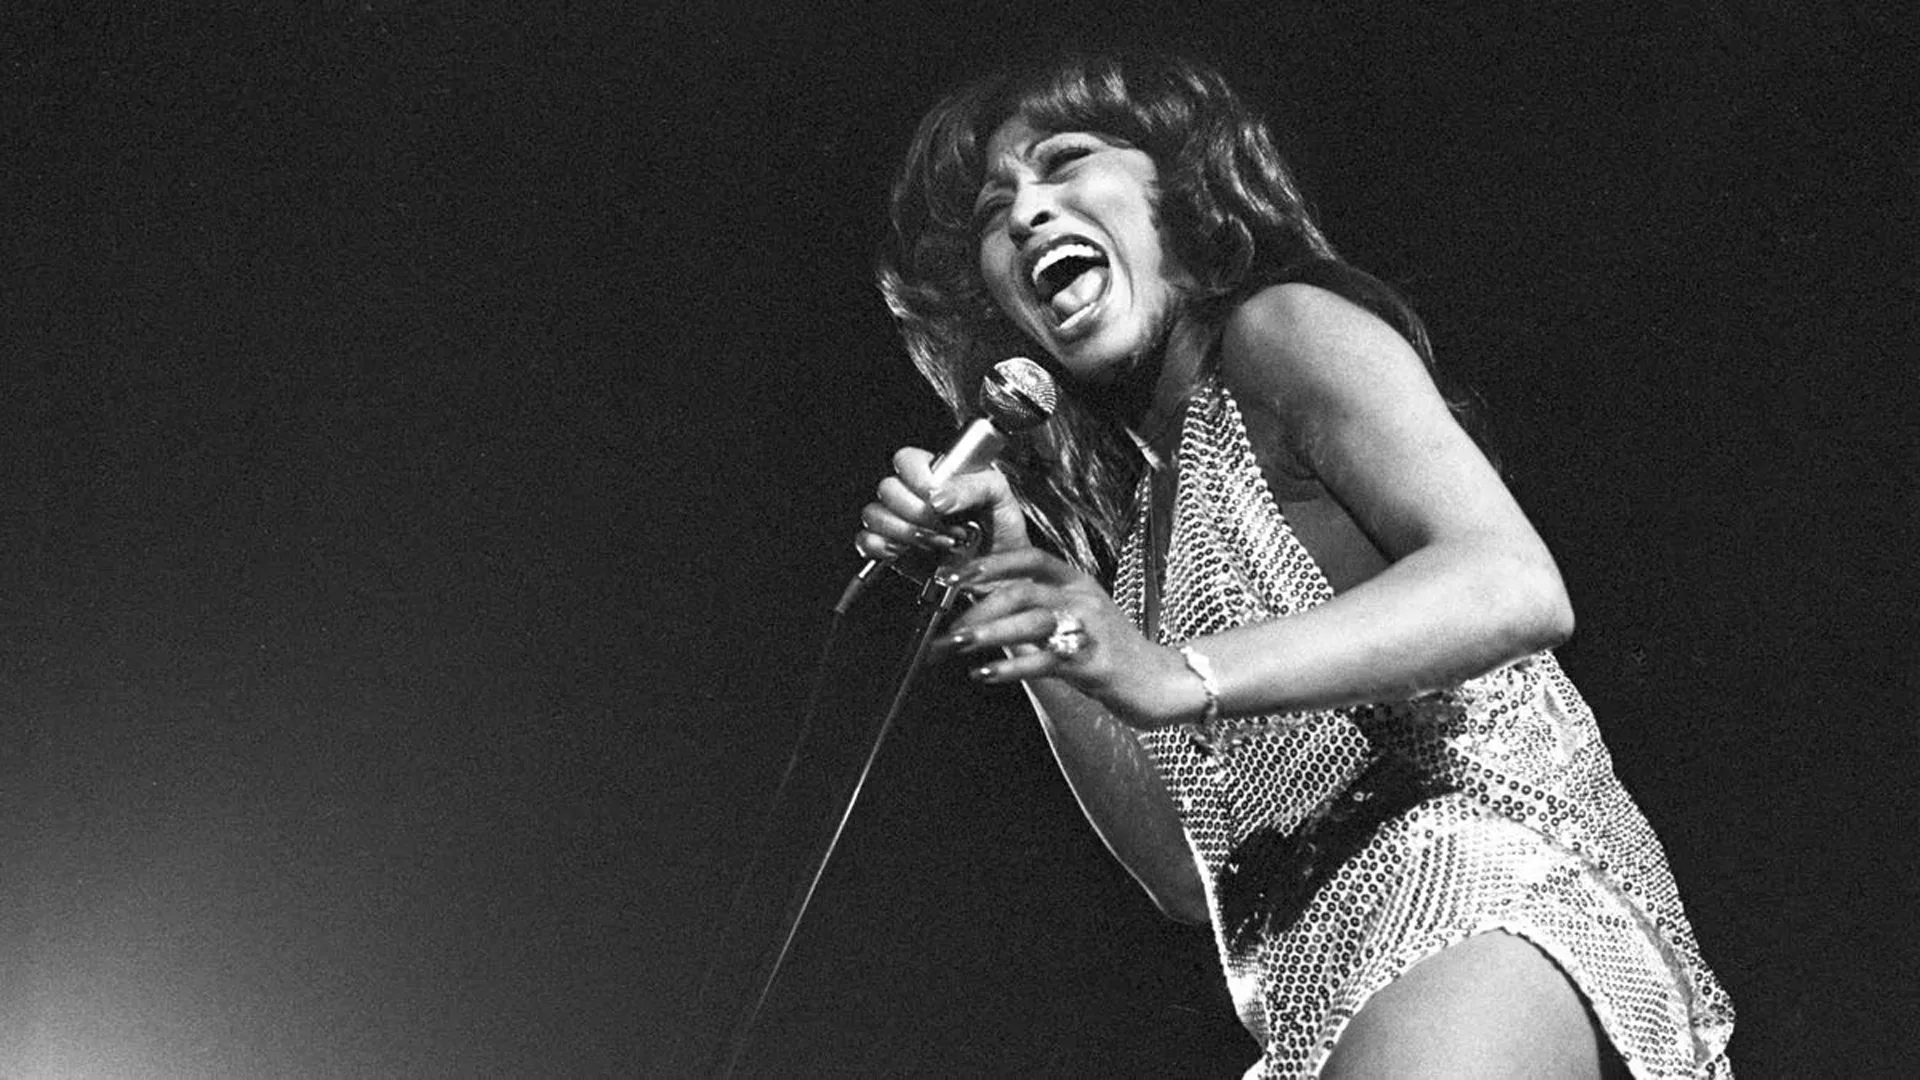 Tina Turner shows